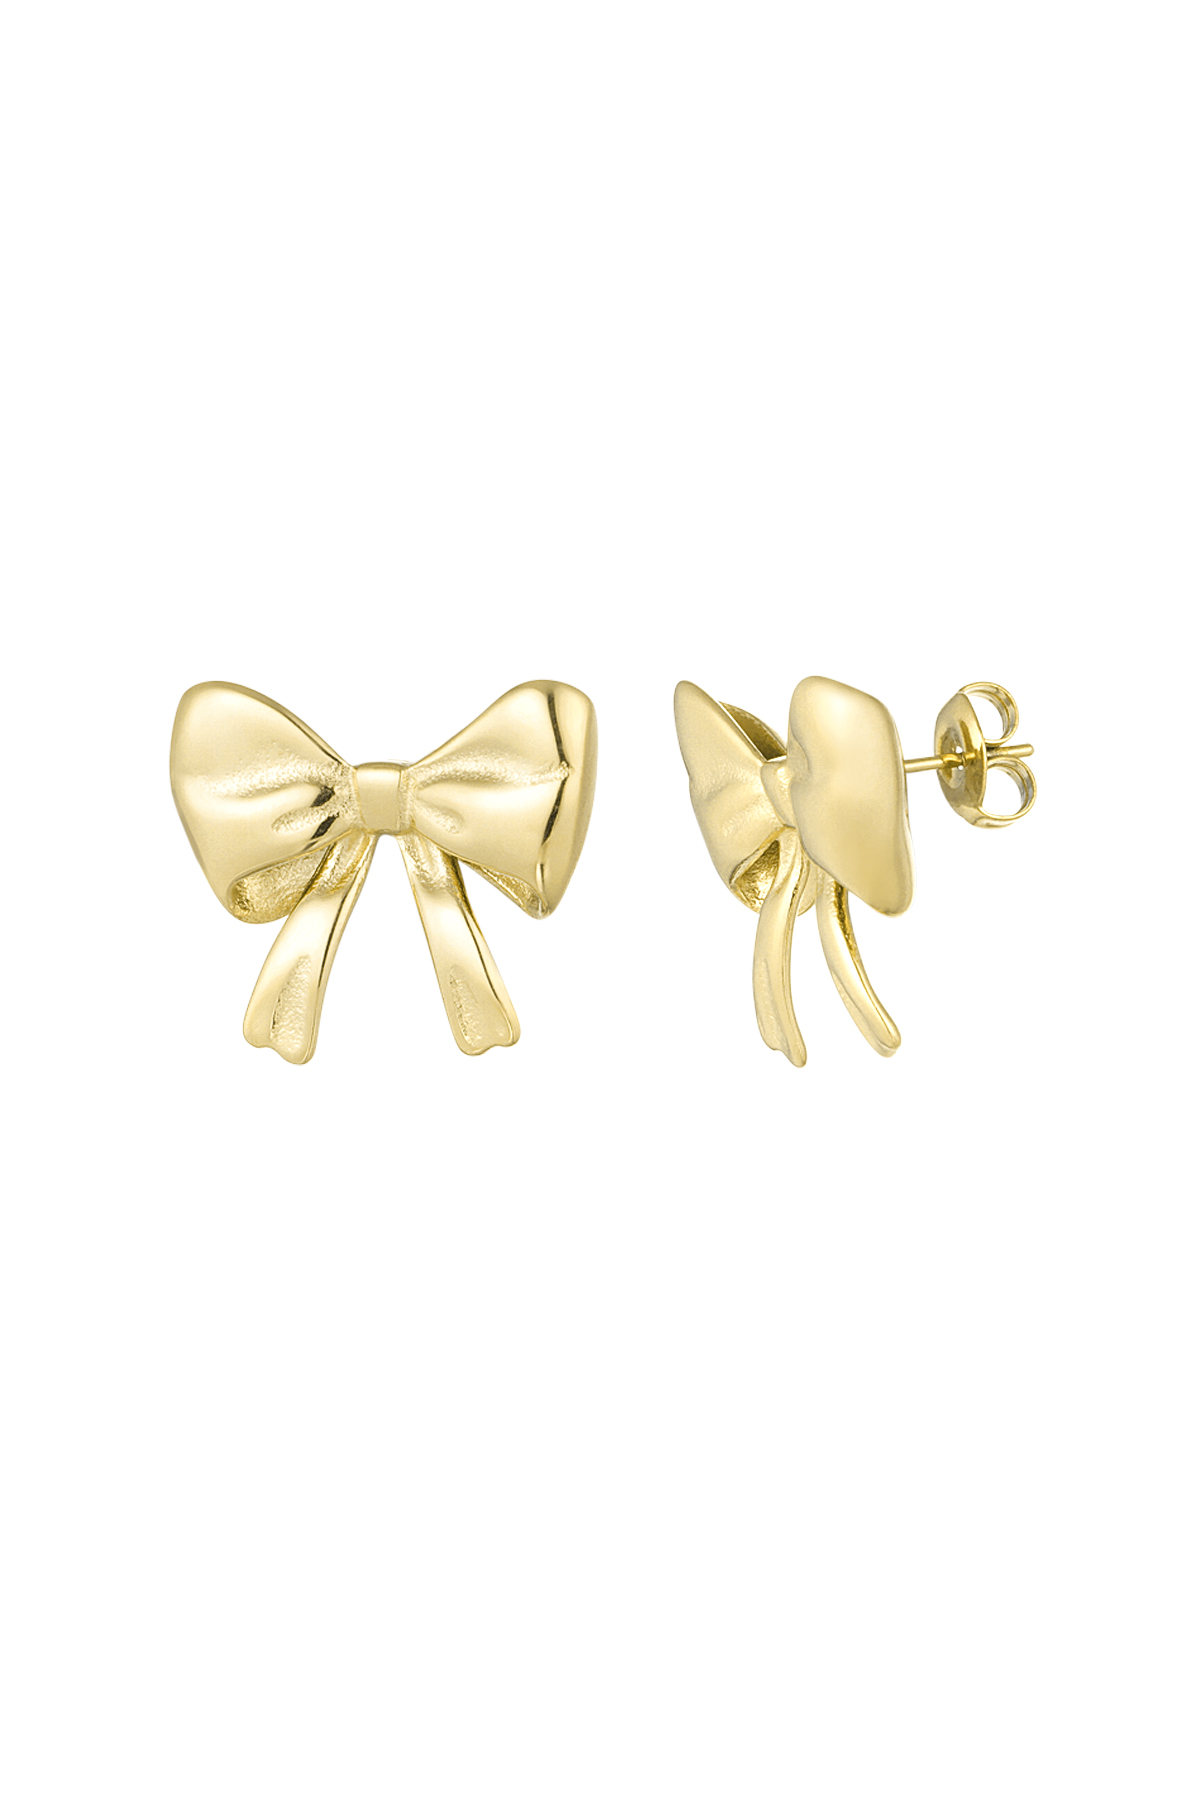 Cute bow earrings - gold 